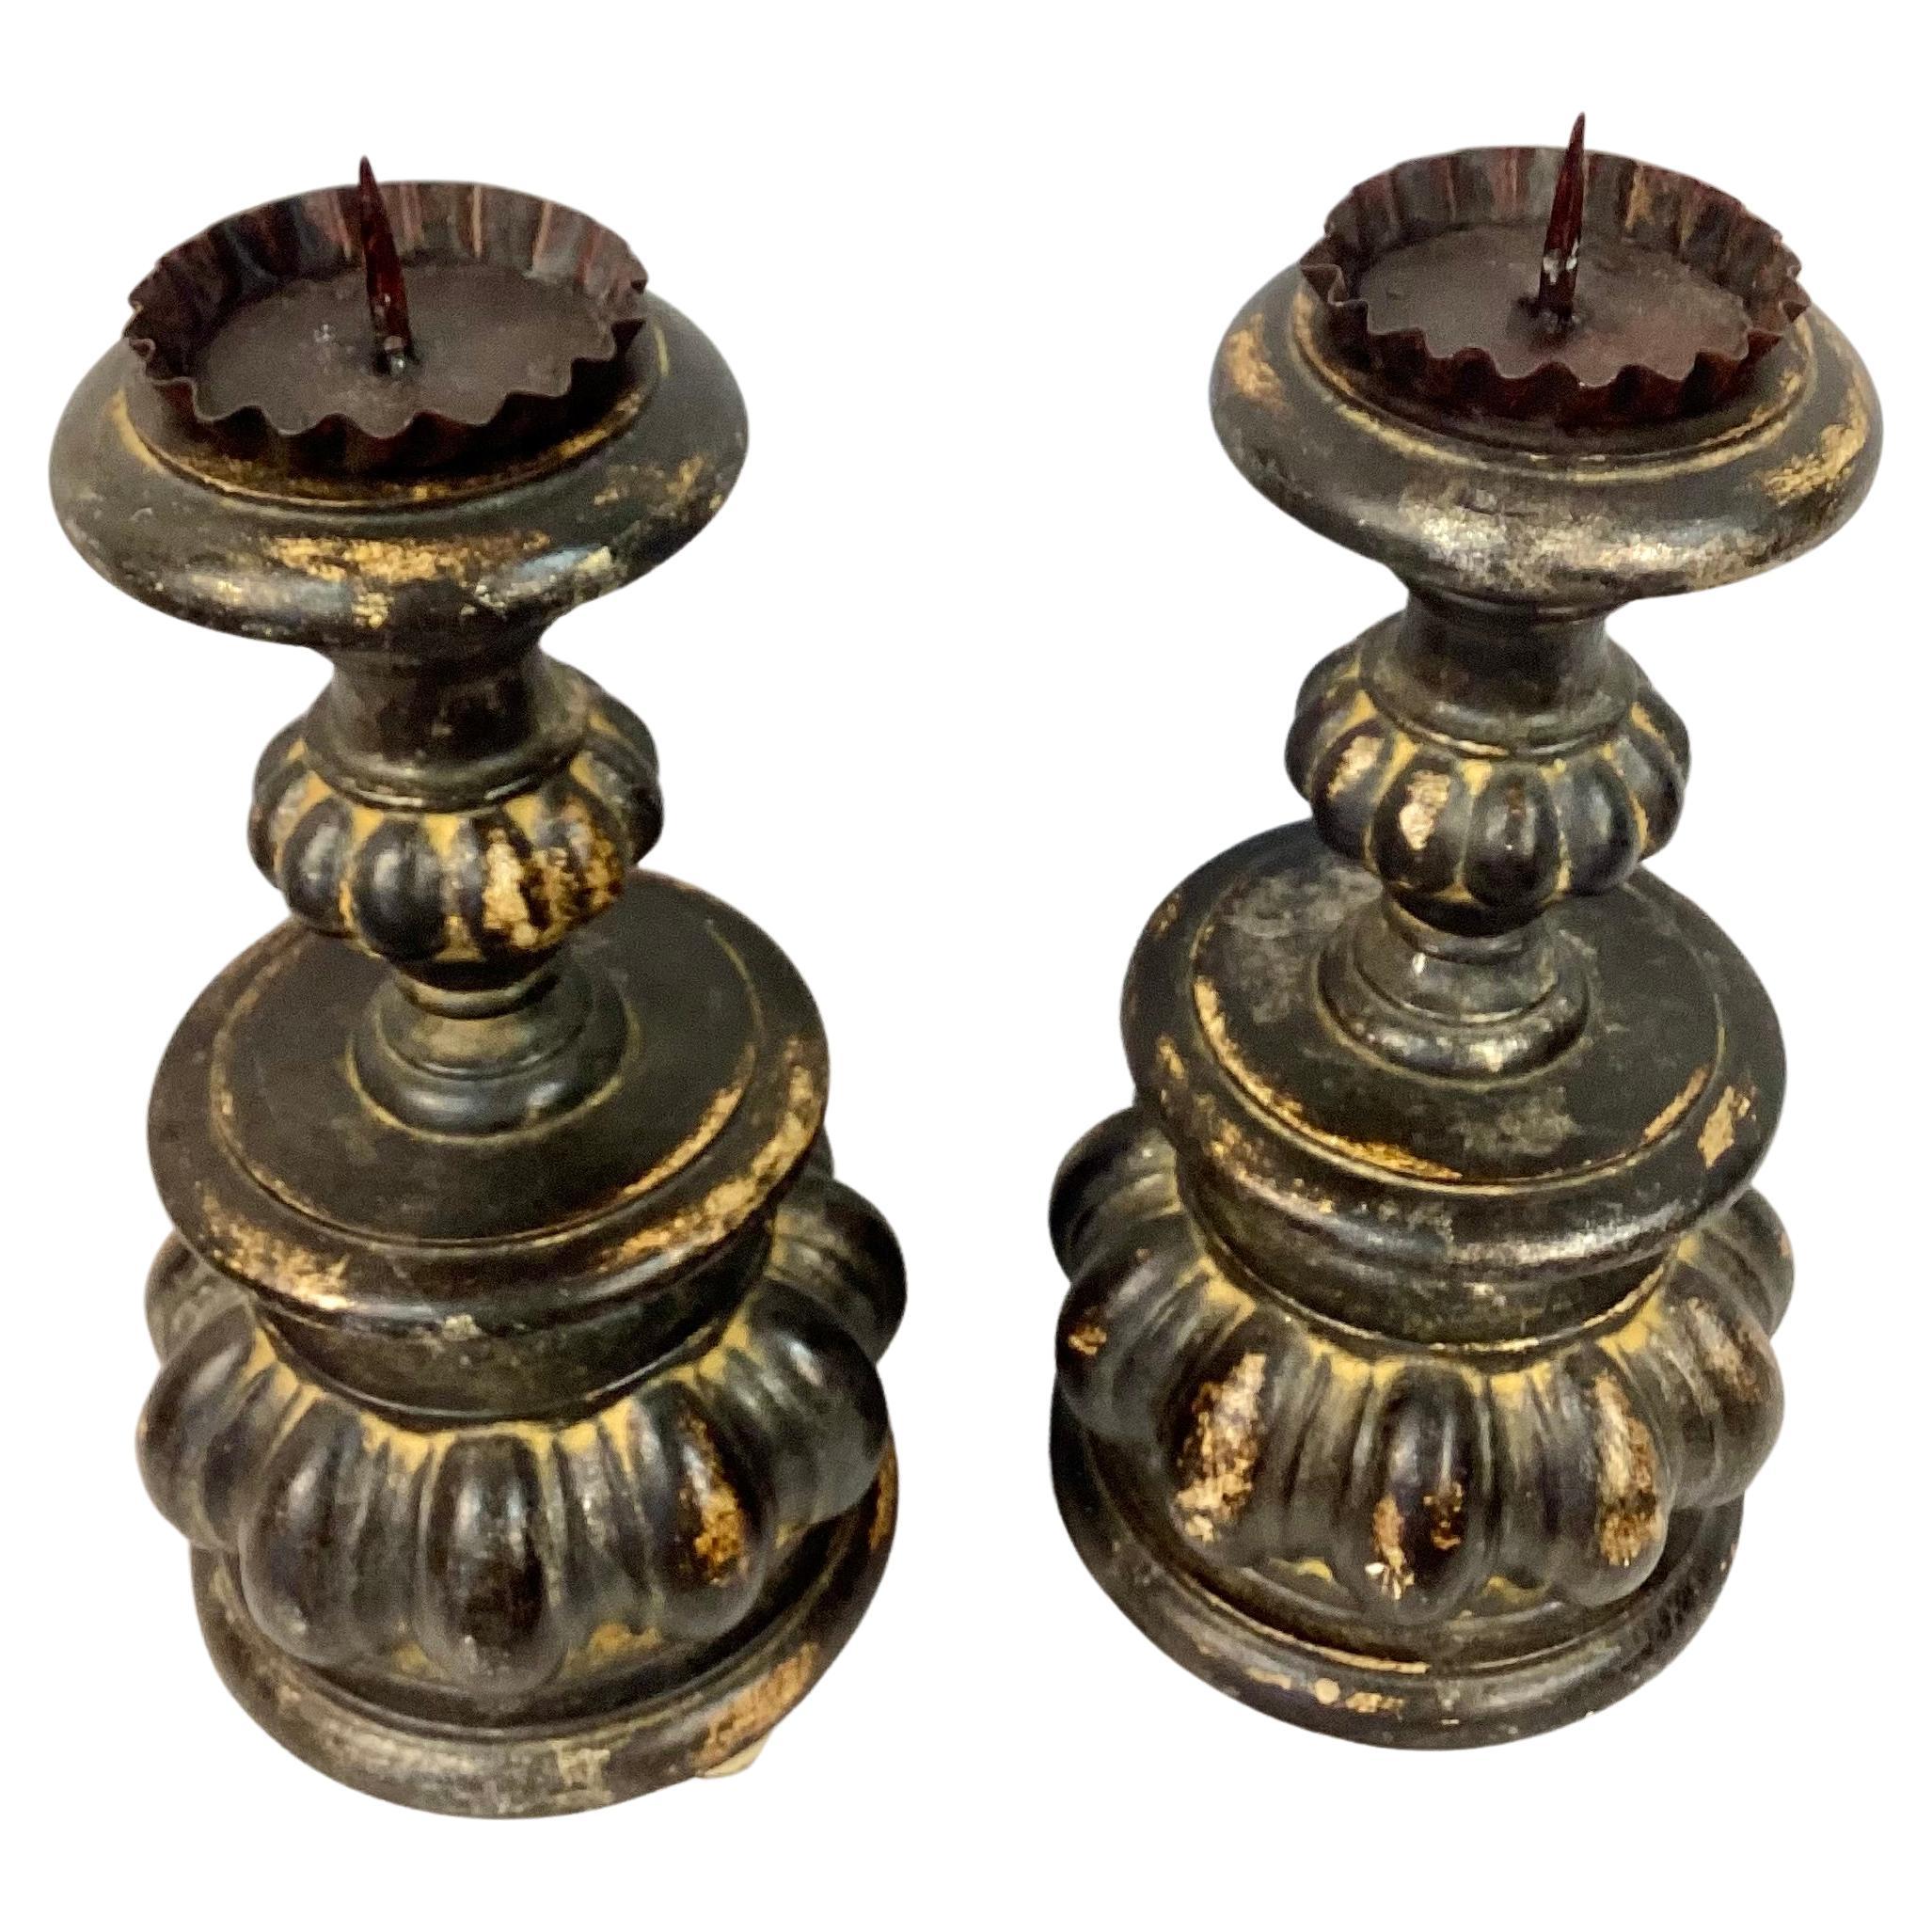 Très belle paire de chandeliers italiens du 19ème siècle. Ce produit est doté d'un magnifique design en bois sculpté en forme de bulbe et de courbe. Base ronde. Belle patine noire et feu. Merveilleuse form A. 